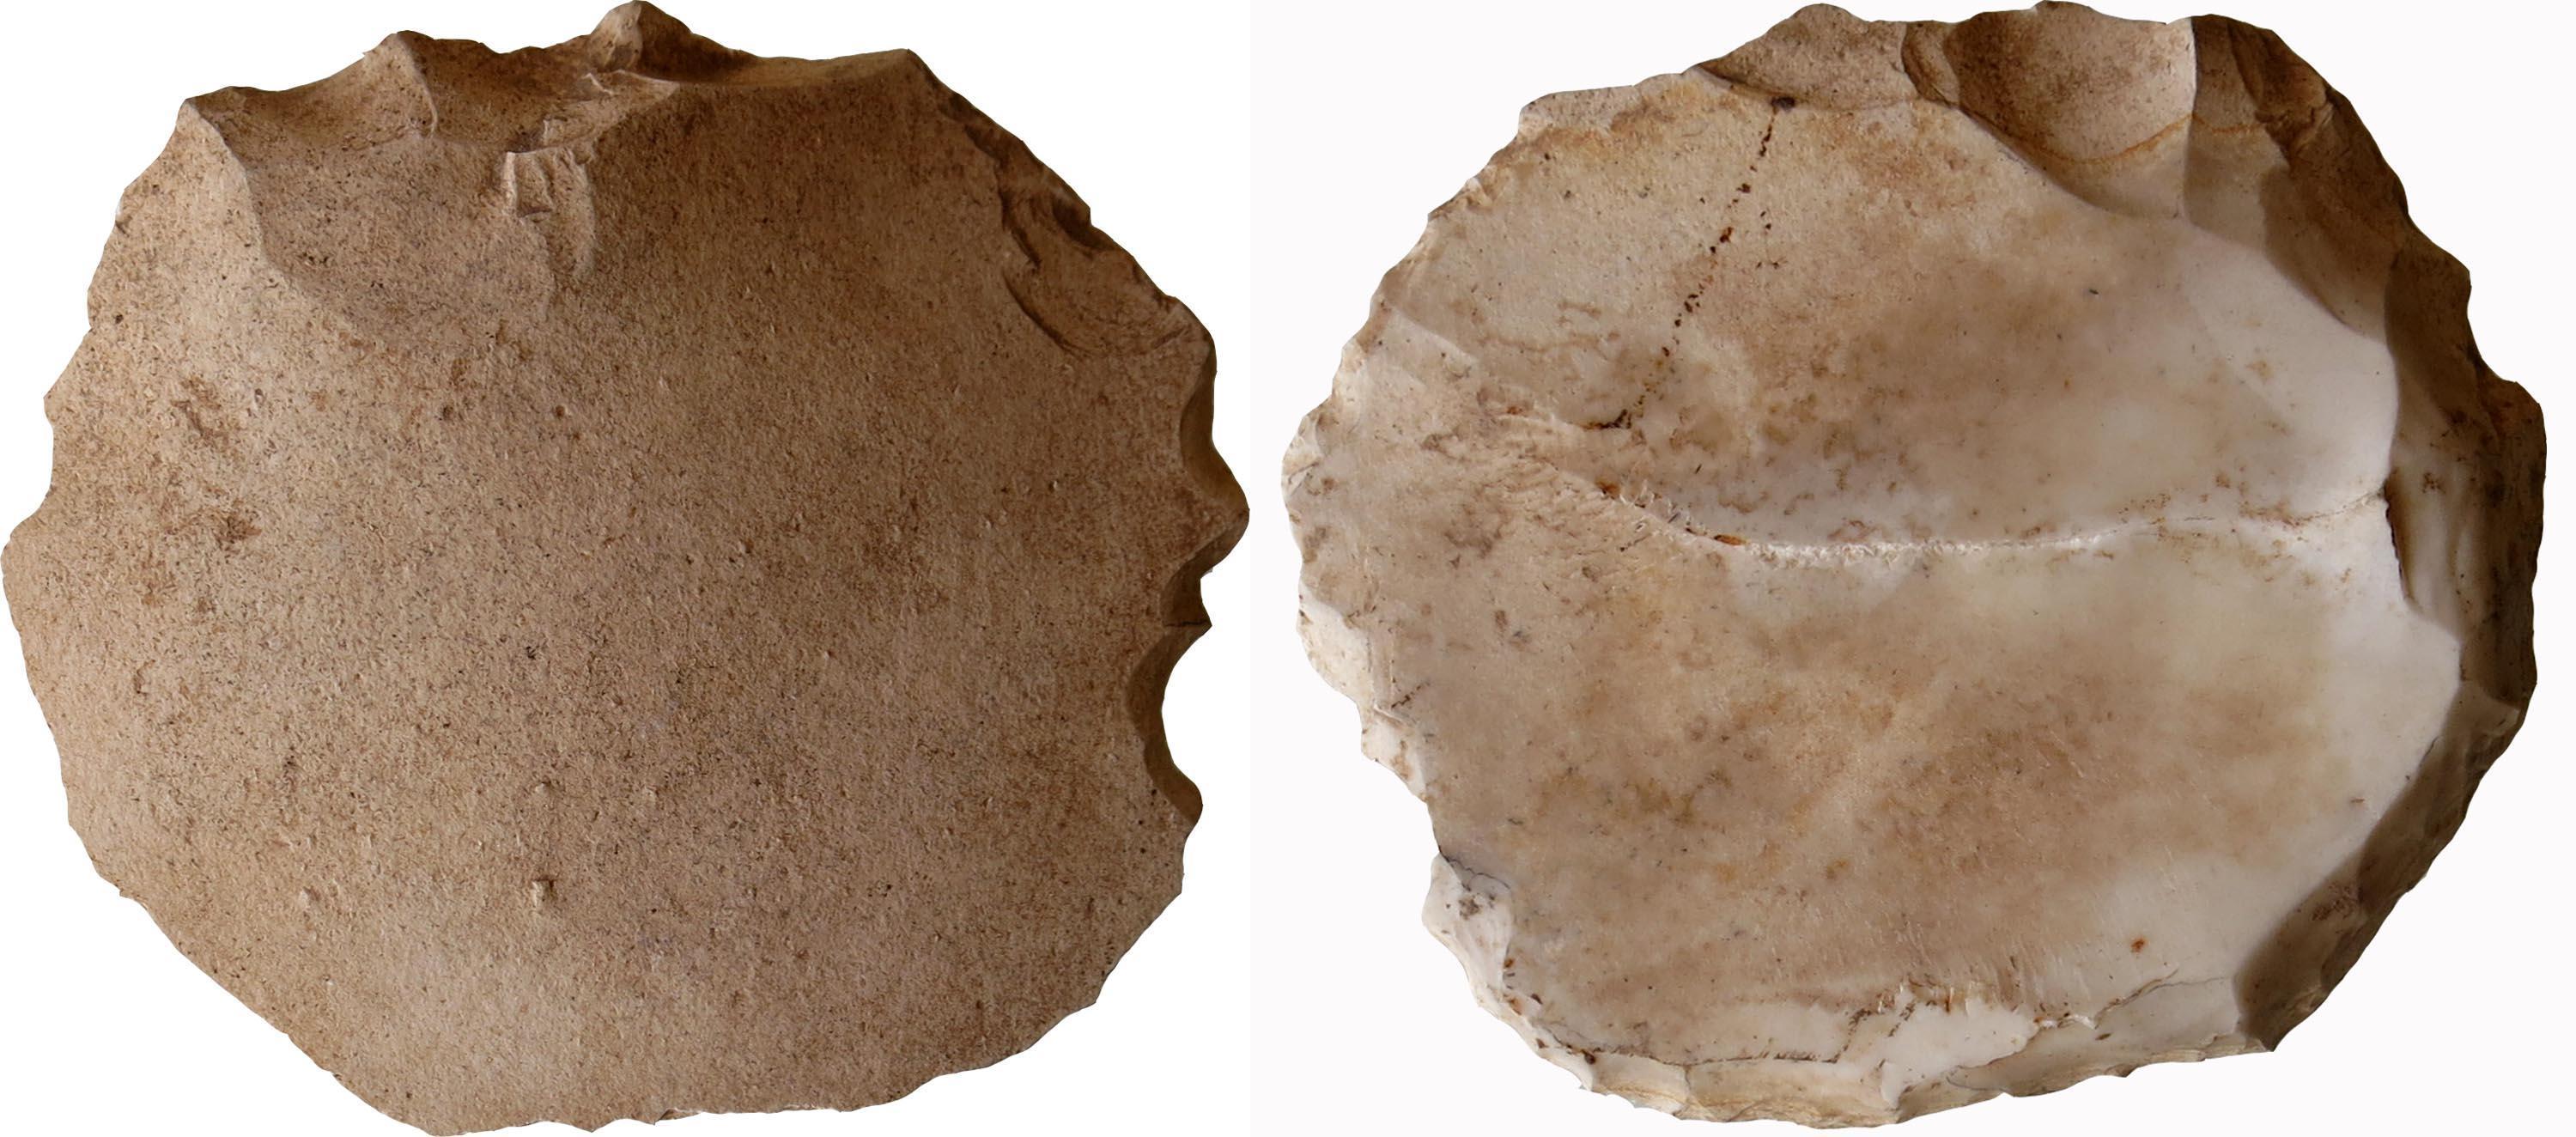 Eskişehirde 200 bin yıl öncesine ait taş alet bulundu